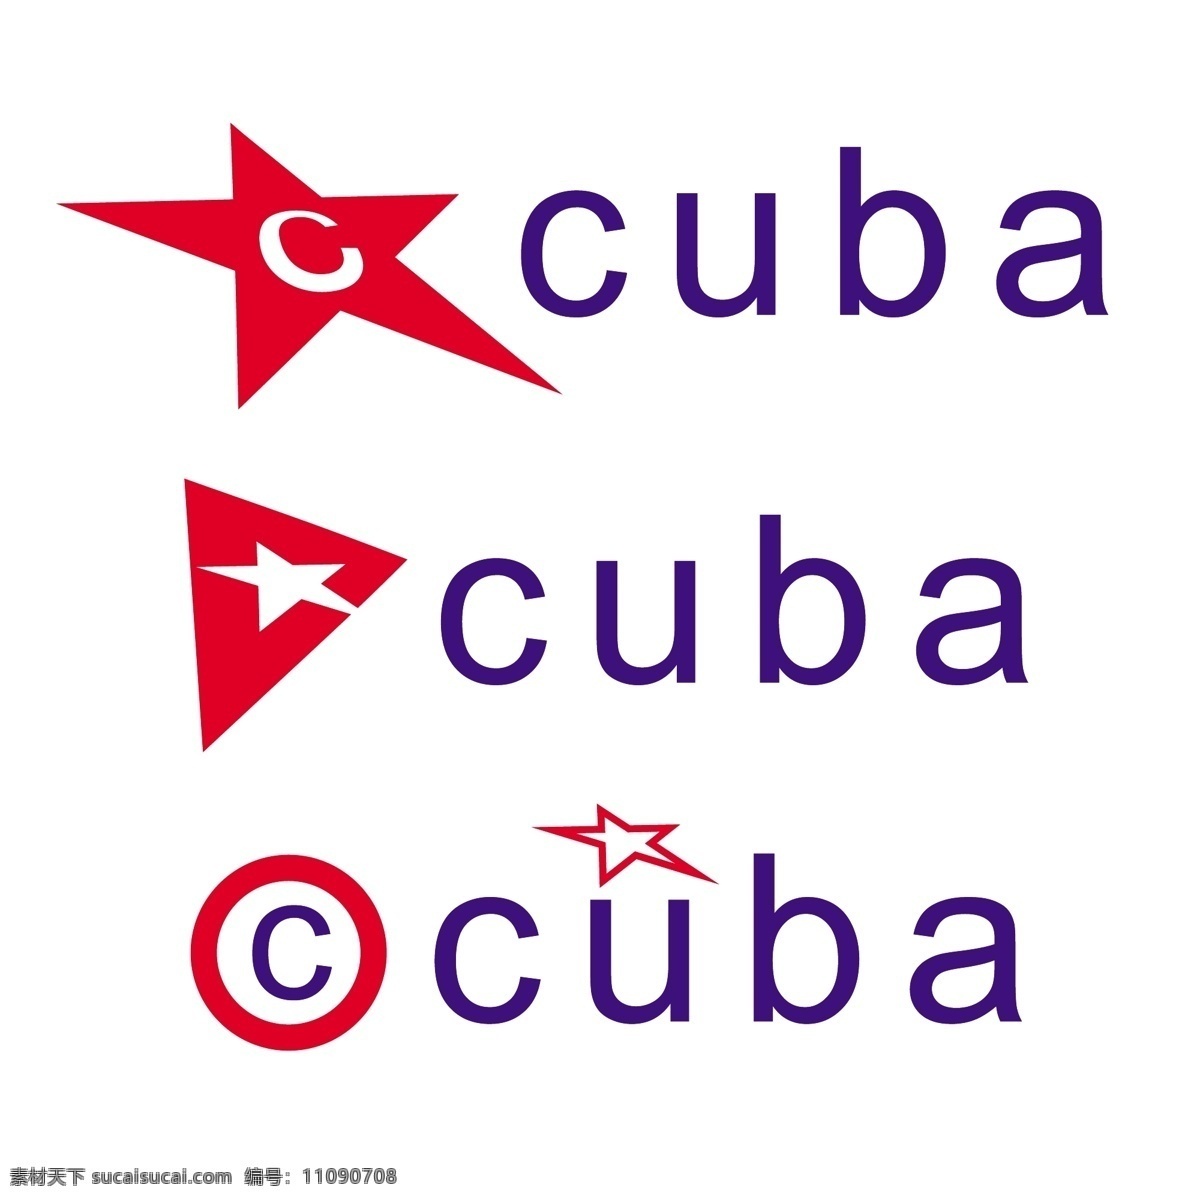 古巴1 古巴 国旗 矢量 艺术 自由 向量 班德 拉 埃斯库多 国旗班 德拉 埃斯库多古巴 古巴自由向量 向量古巴 古巴哈瓦那 古巴的标志 剪贴 画